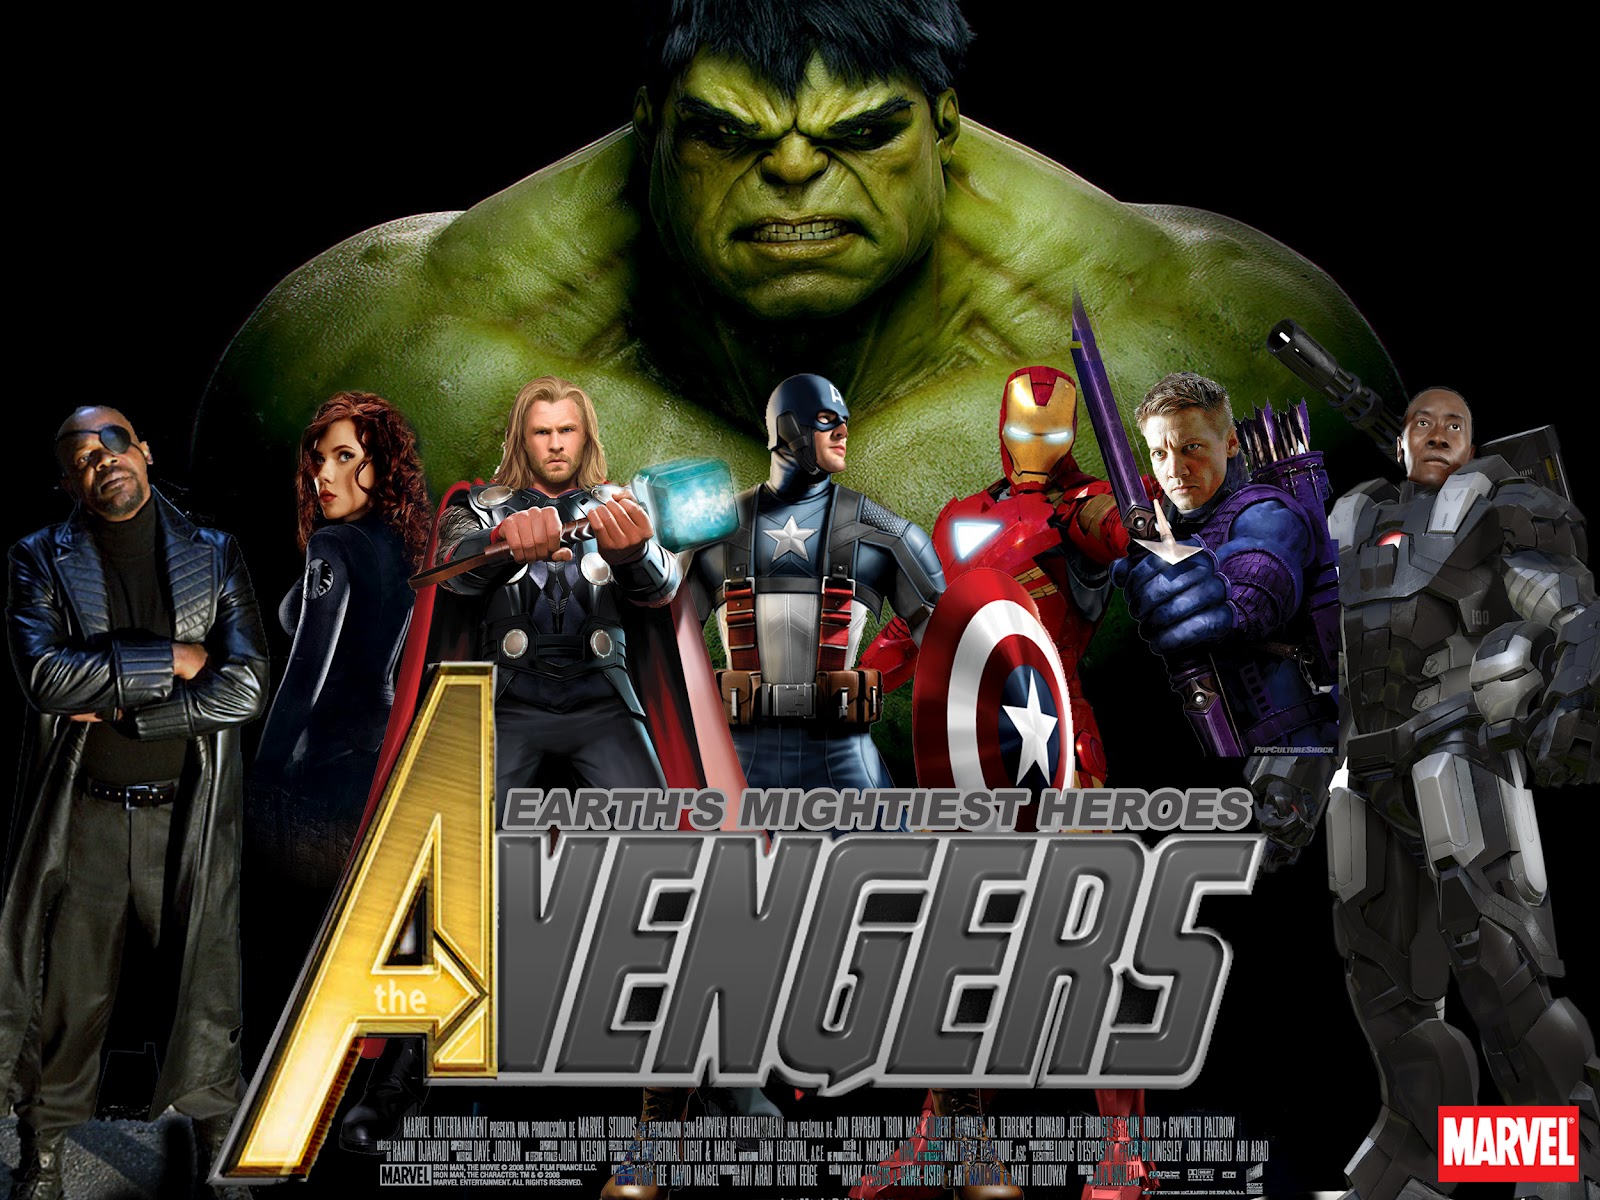 http://4.bp.blogspot.com/-2DaZmDuU_zk/T5wiWIIyDwI/AAAAAAAABFI/Qt3GFv7rwpA/s1600/The_Avengers_Movie_by_Alex4everdn.jpg